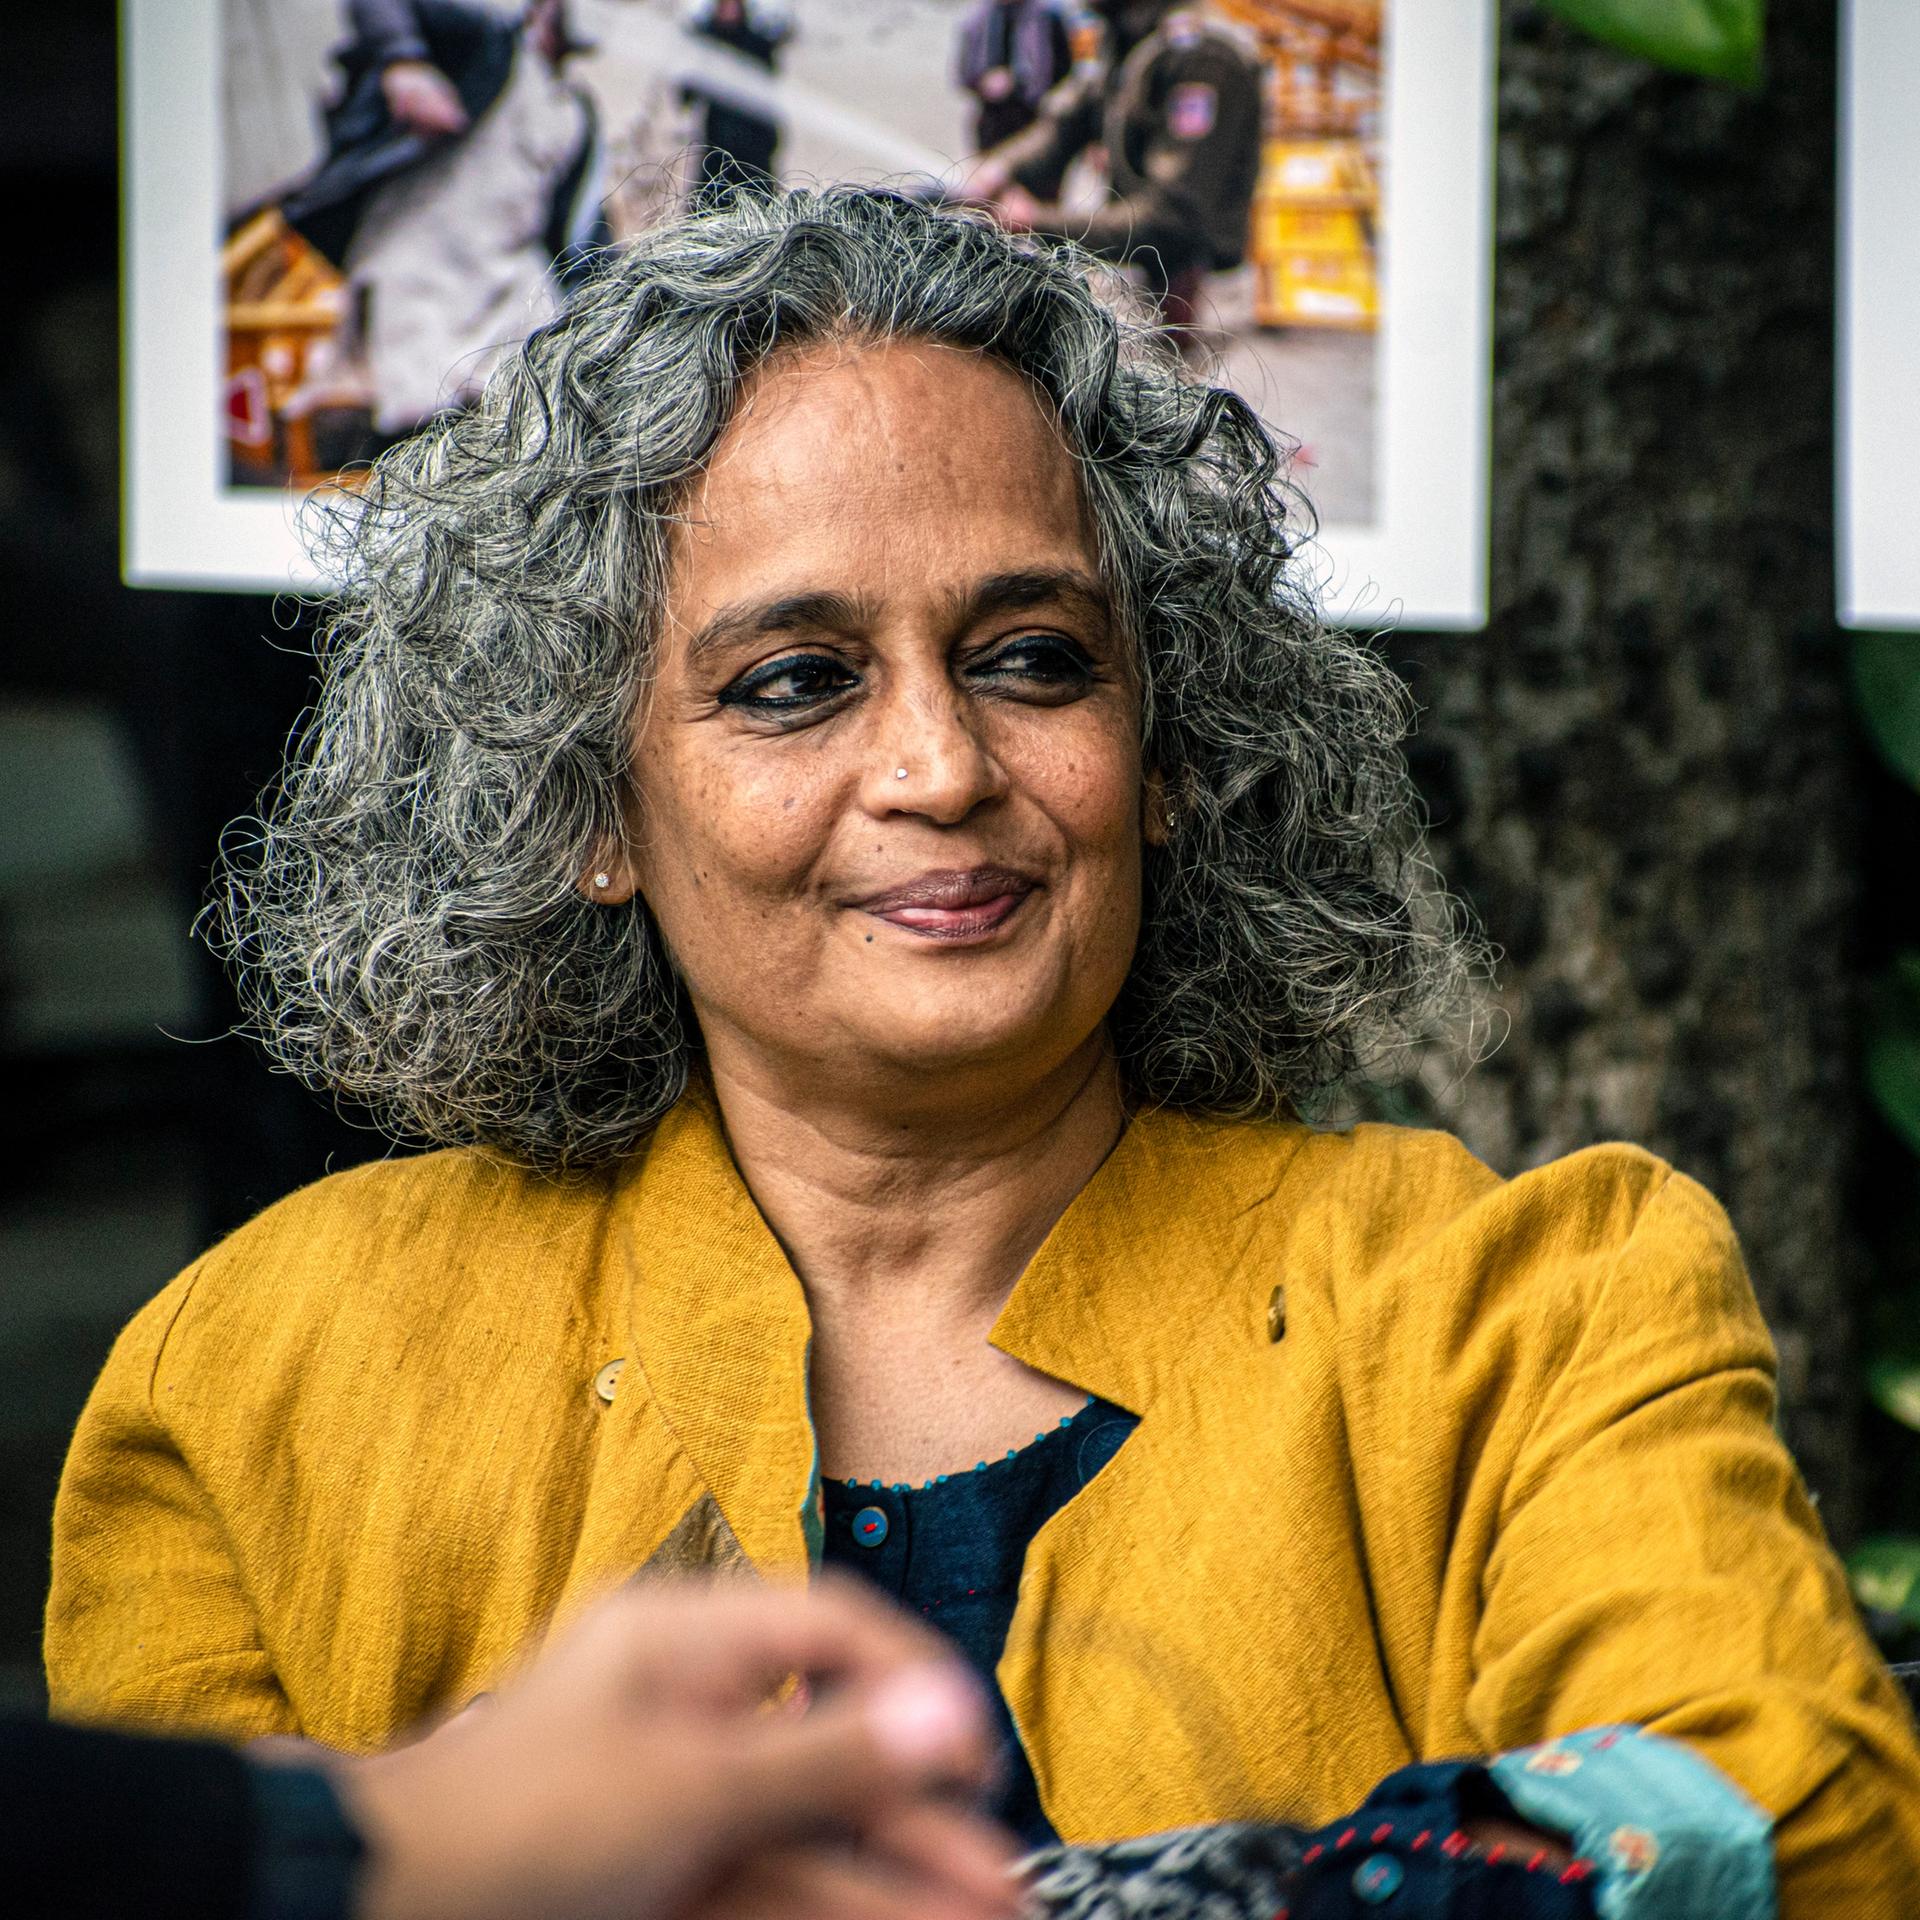 Anklage gegen Autorin Roy – Bärfuss beklagt Indiens Kampf gegen kritische Intellektuelle